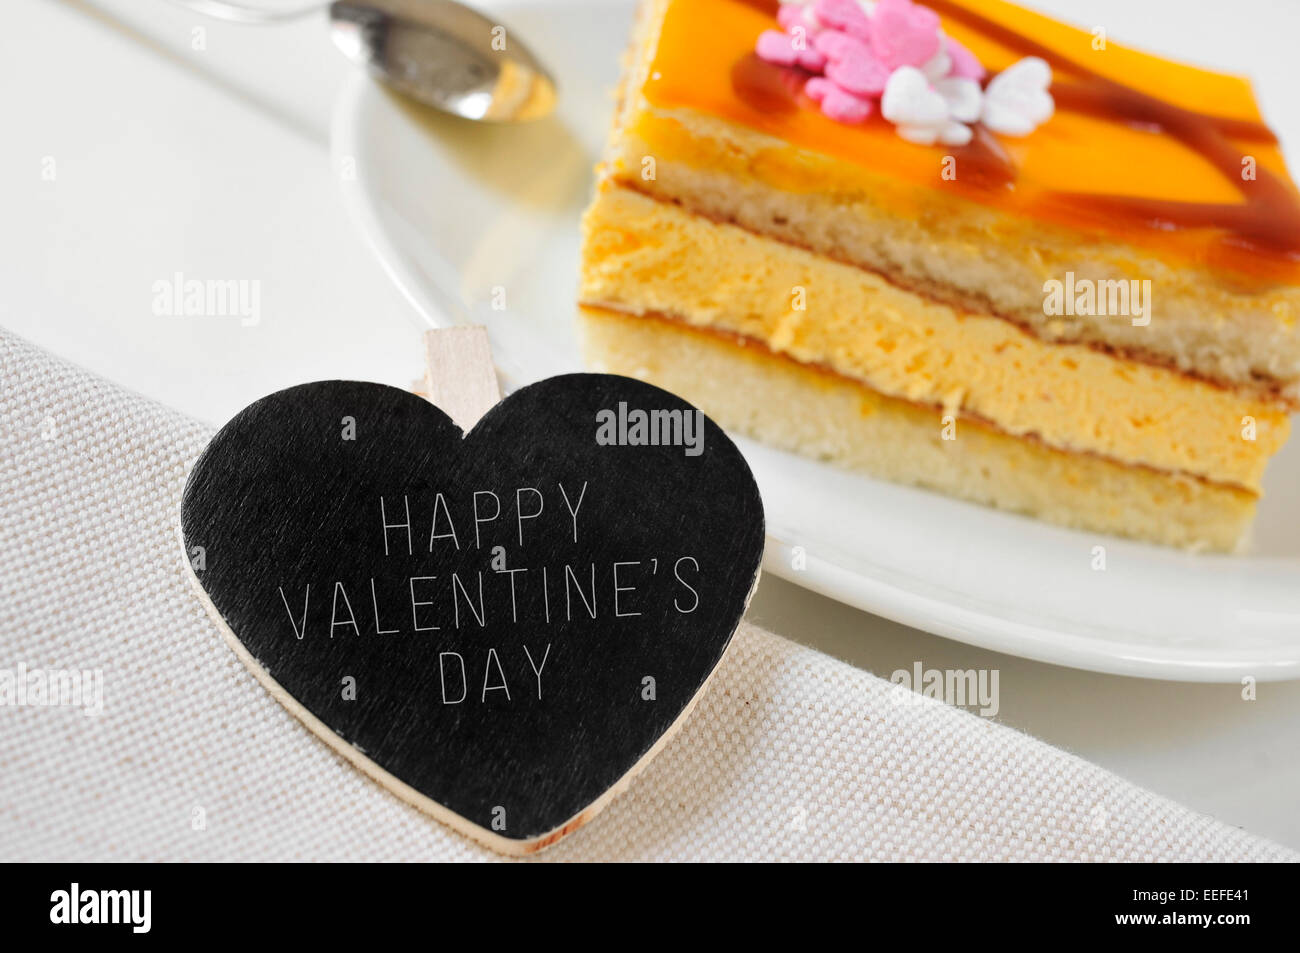 der Satz glücklich Valentinstag, geschrieben in einer Herzform Tafel und ein Stück Kuchen auf einem gedeckten Tisch Stockfoto